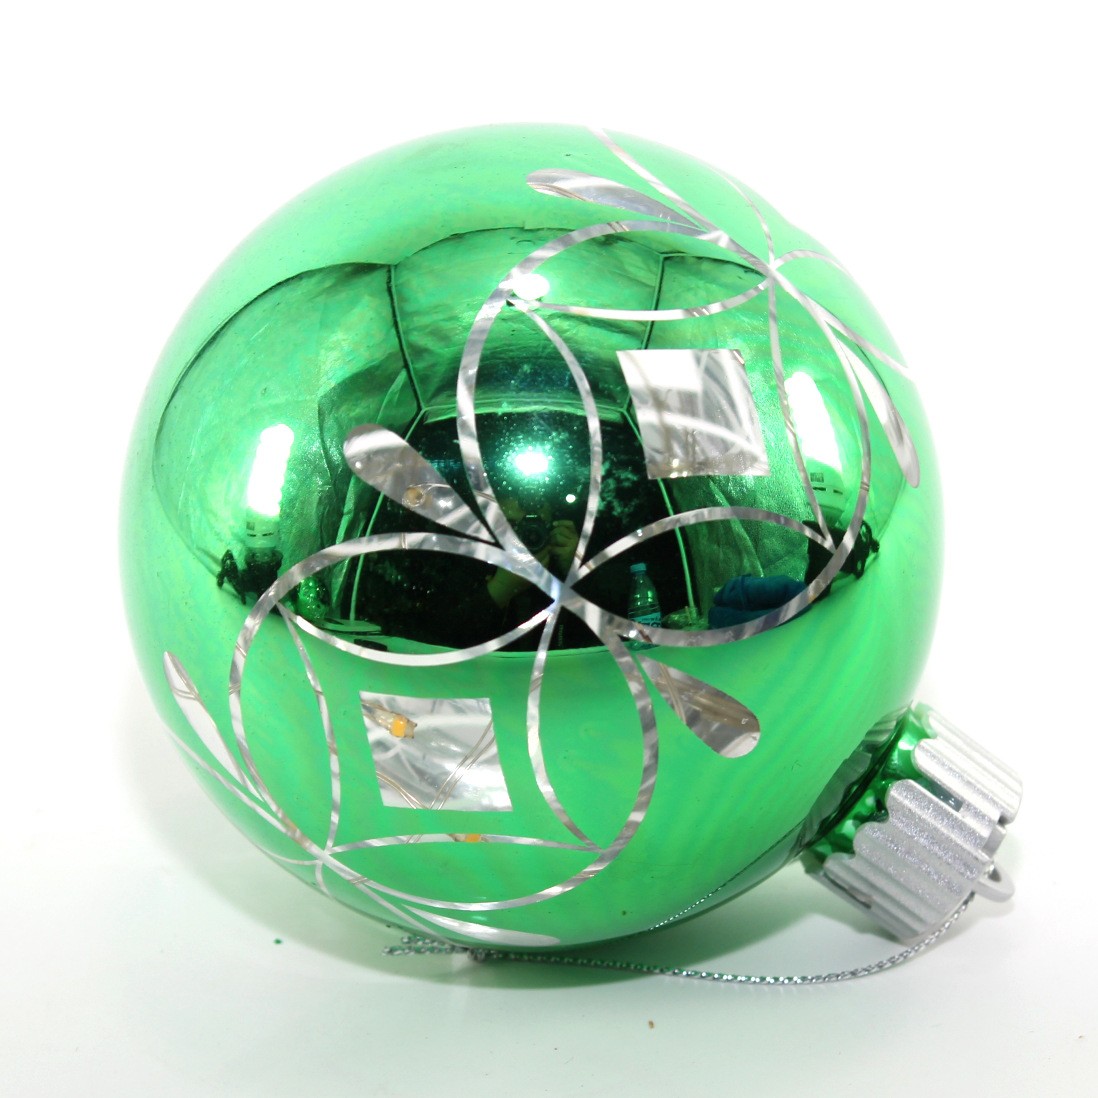 LED聖誕玻璃球創意工藝禮品激光雕刻聖誕球